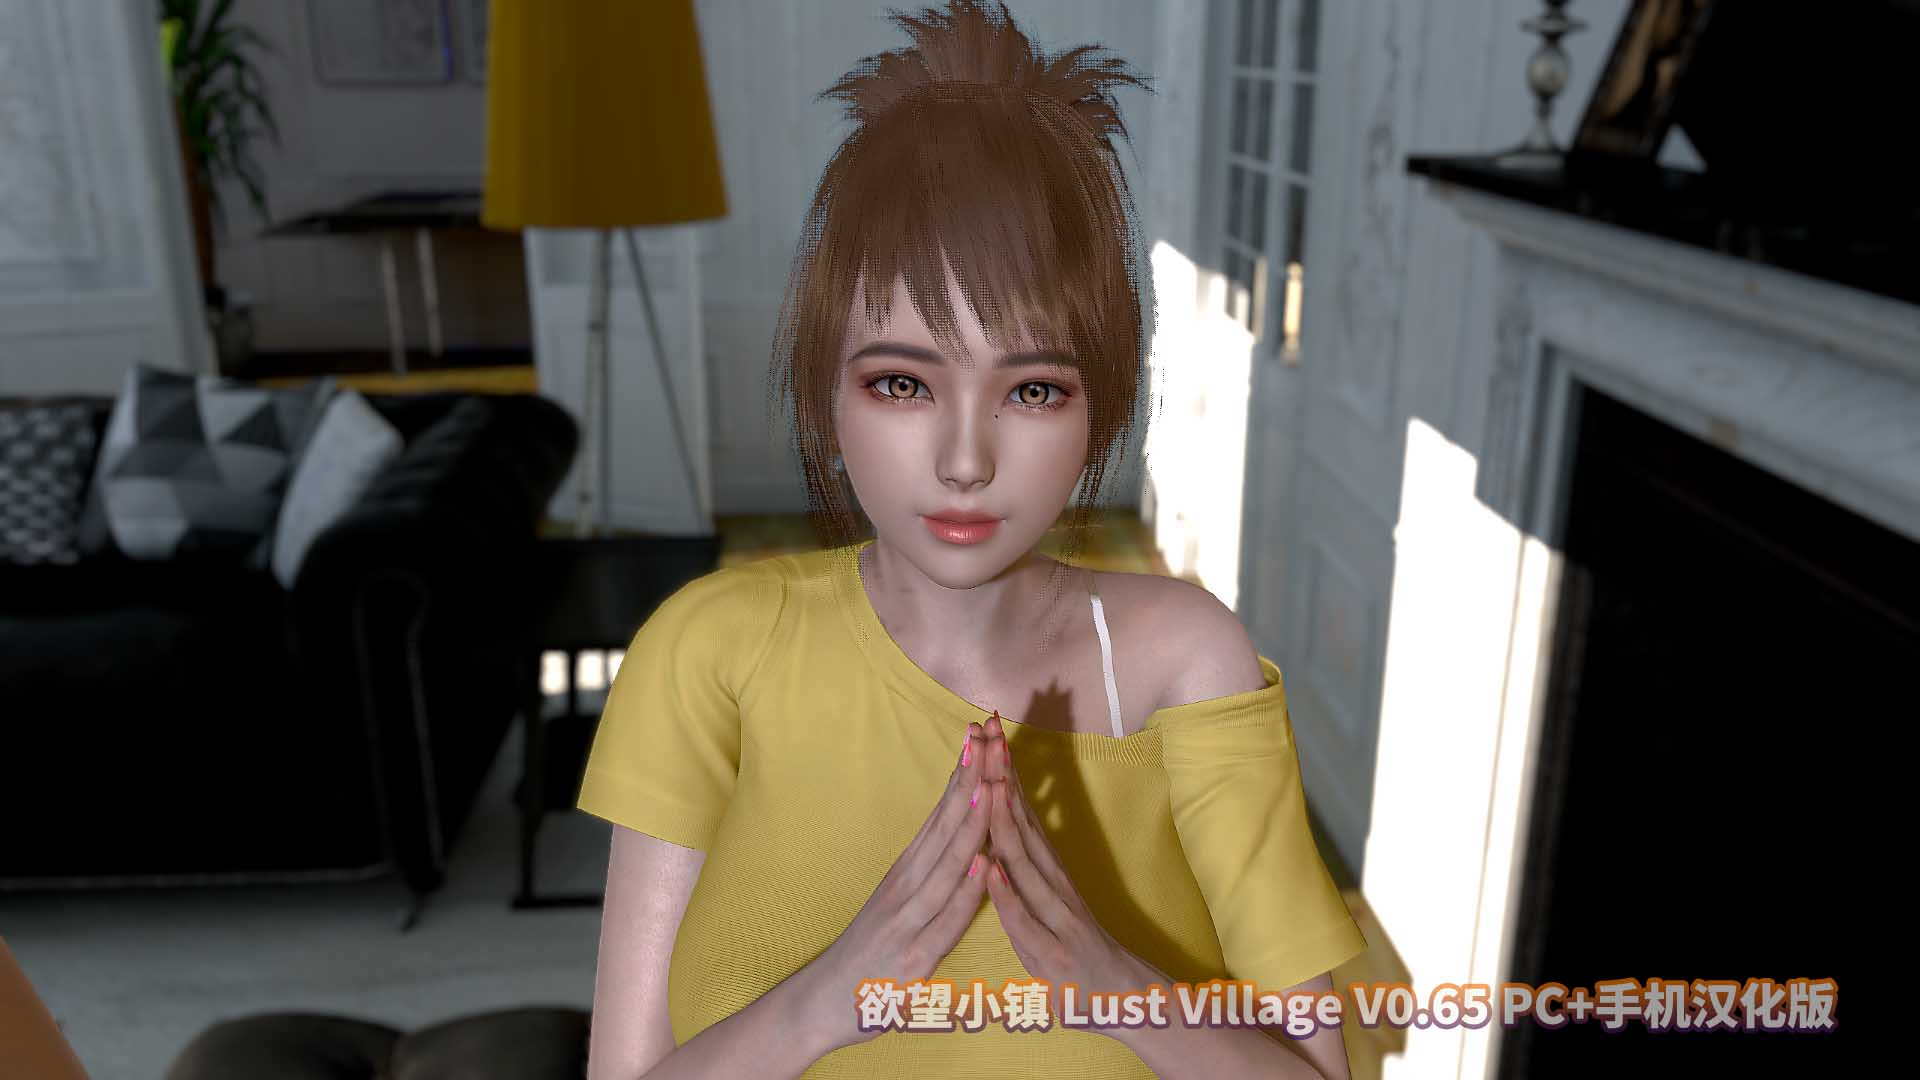 欲望小镇 Lust Village V0.65 PC+手机汉化版